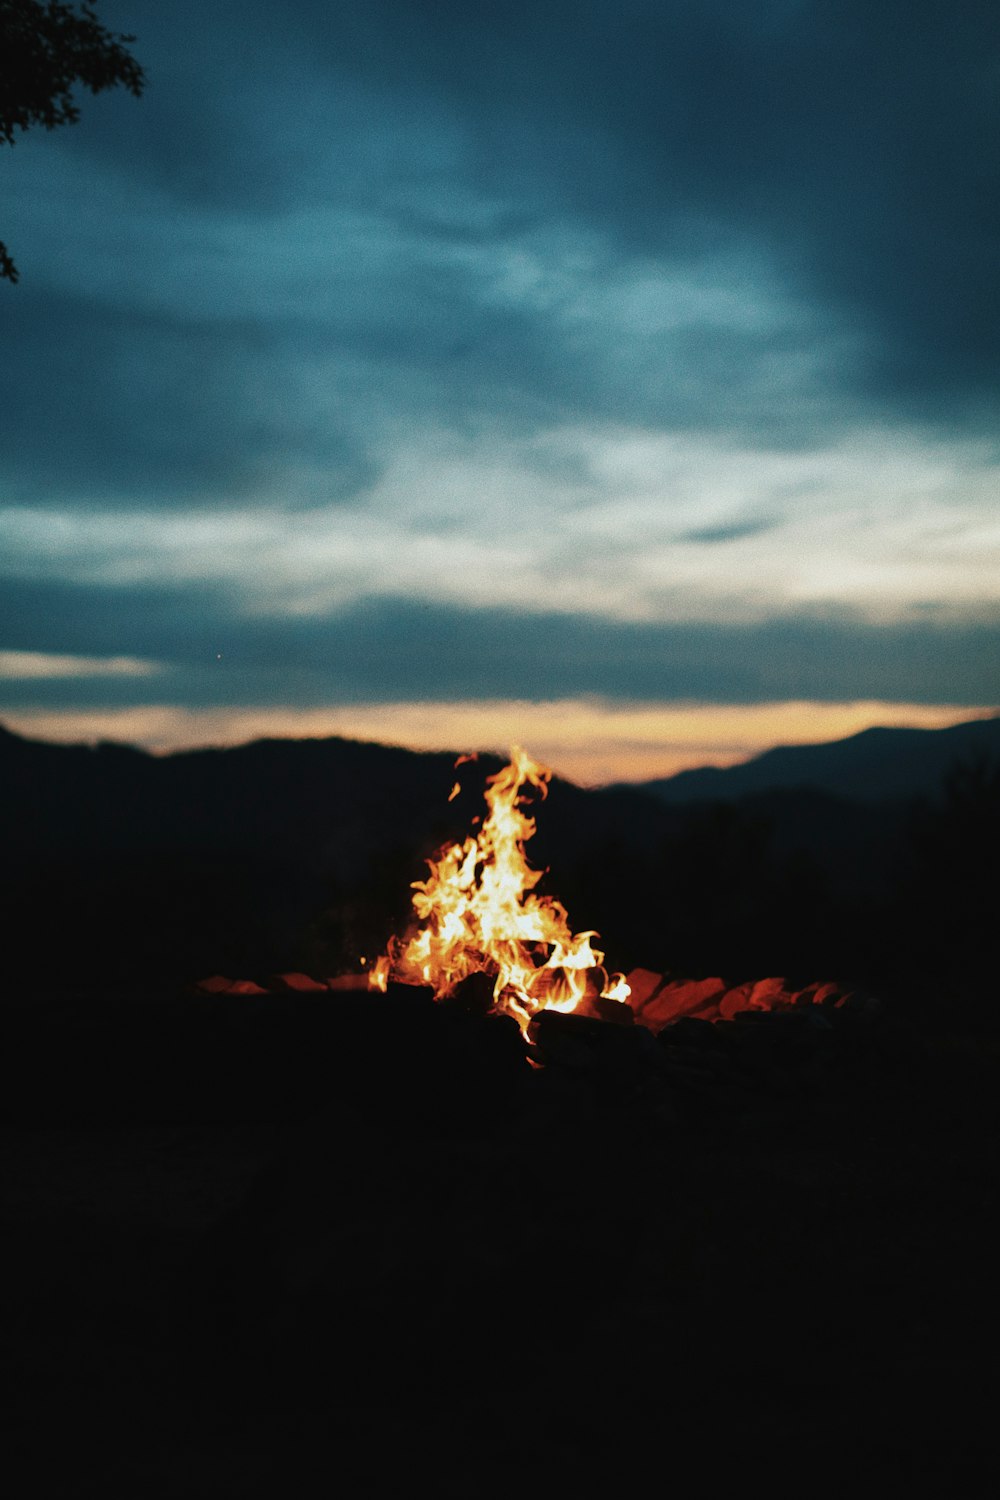 Fotografie von Lagerfeuern in der Nacht